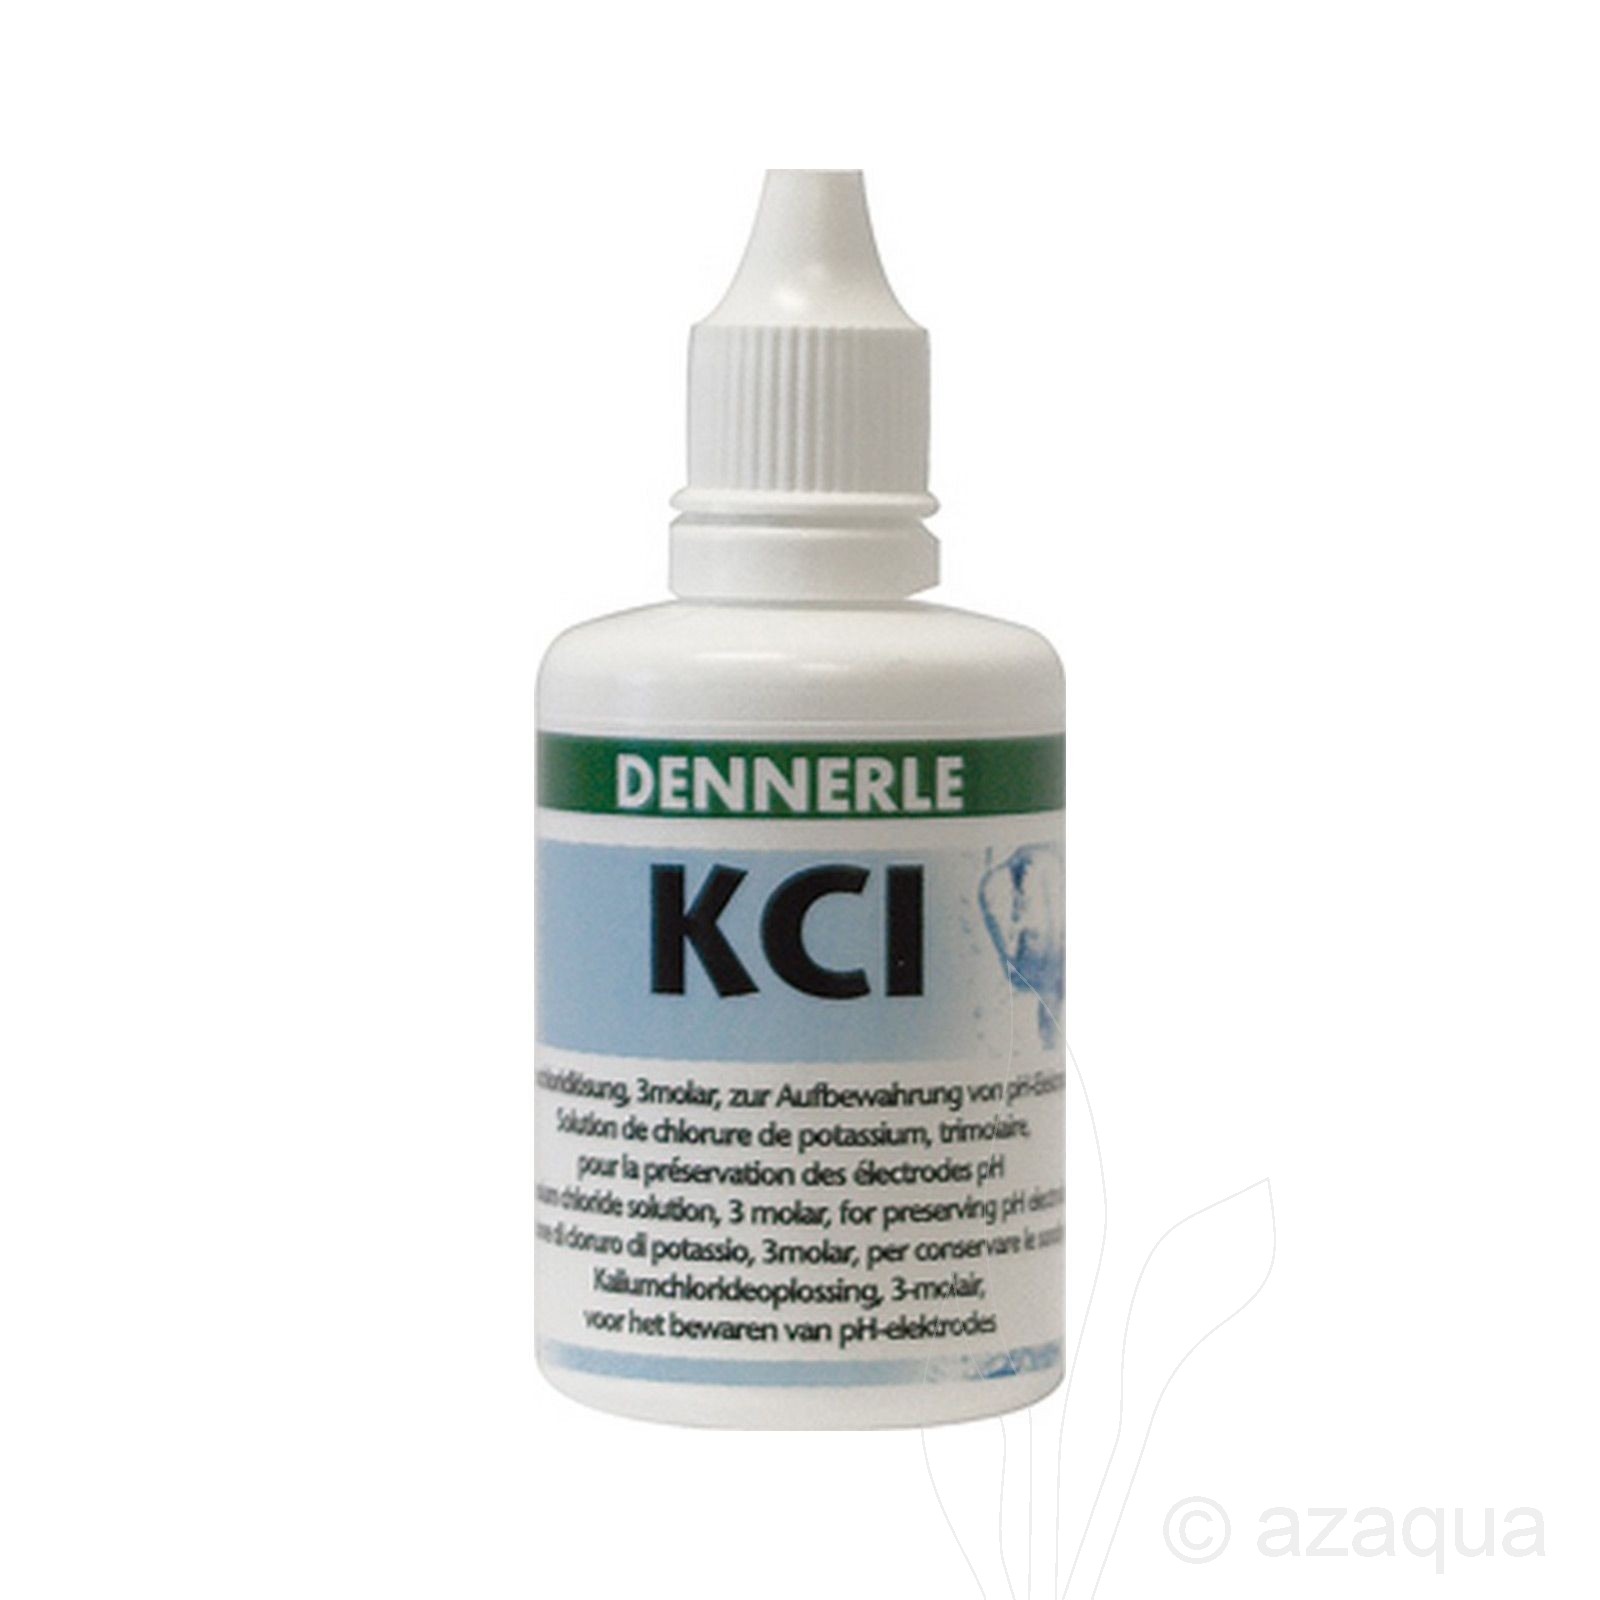 Dennerele KCL-vloeistof (50ml)